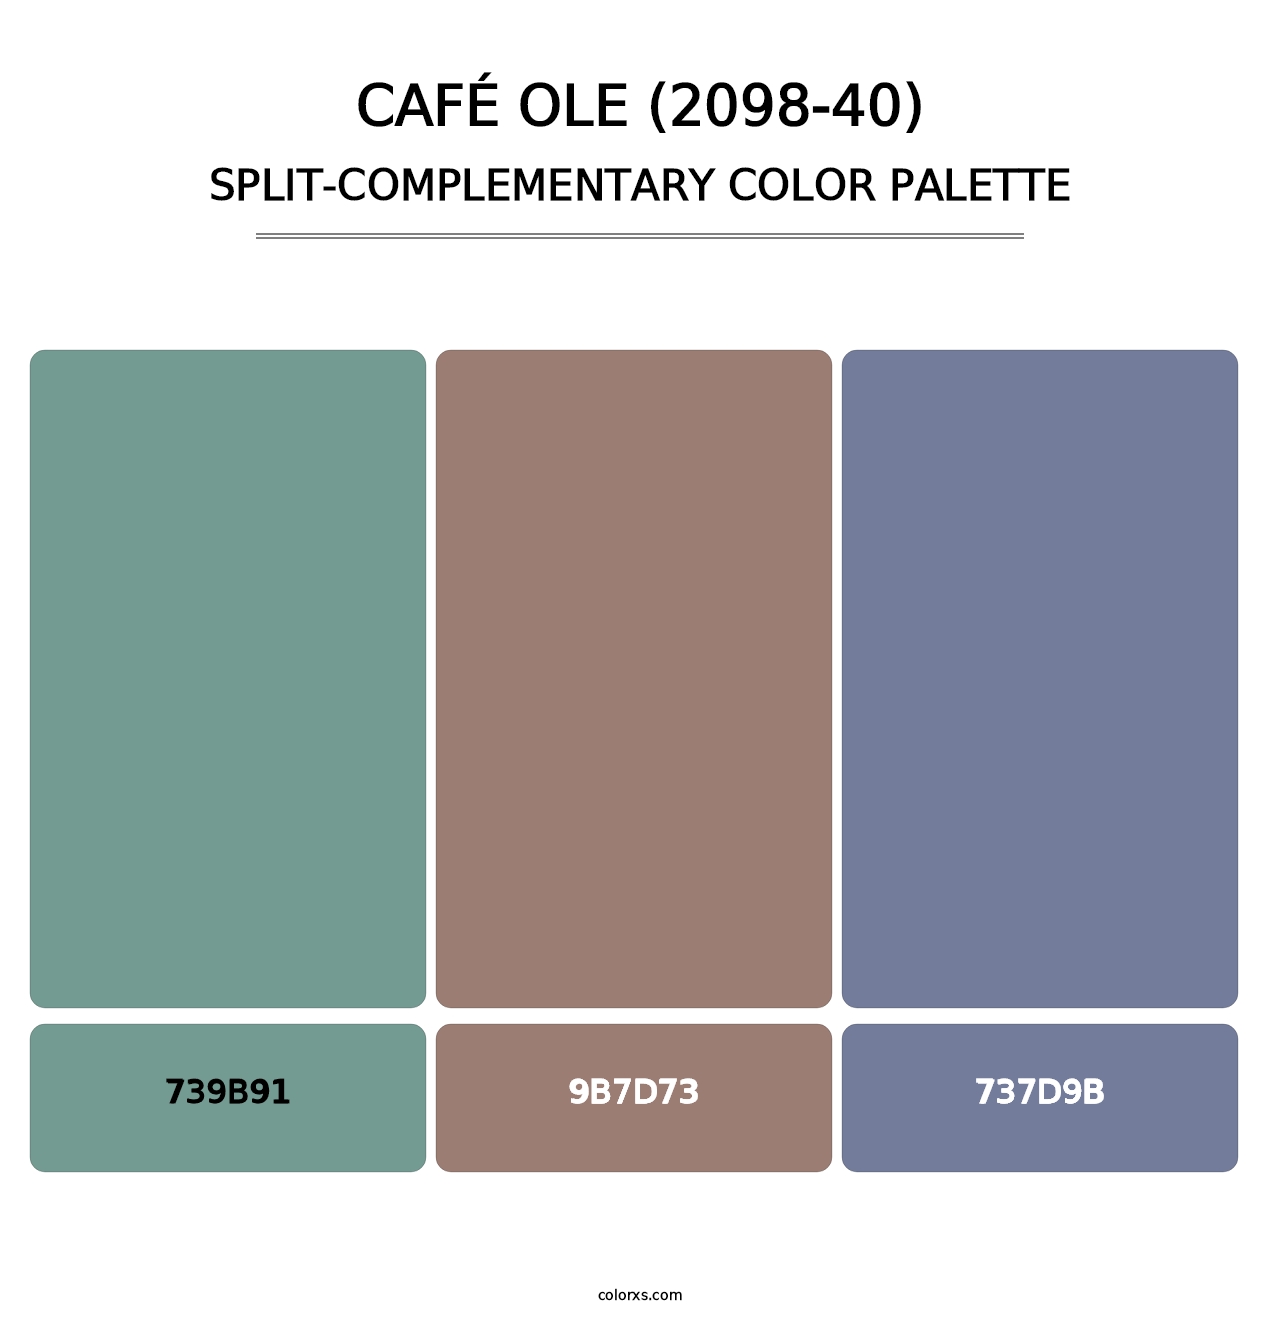 Café Ole (2098-40) - Split-Complementary Color Palette